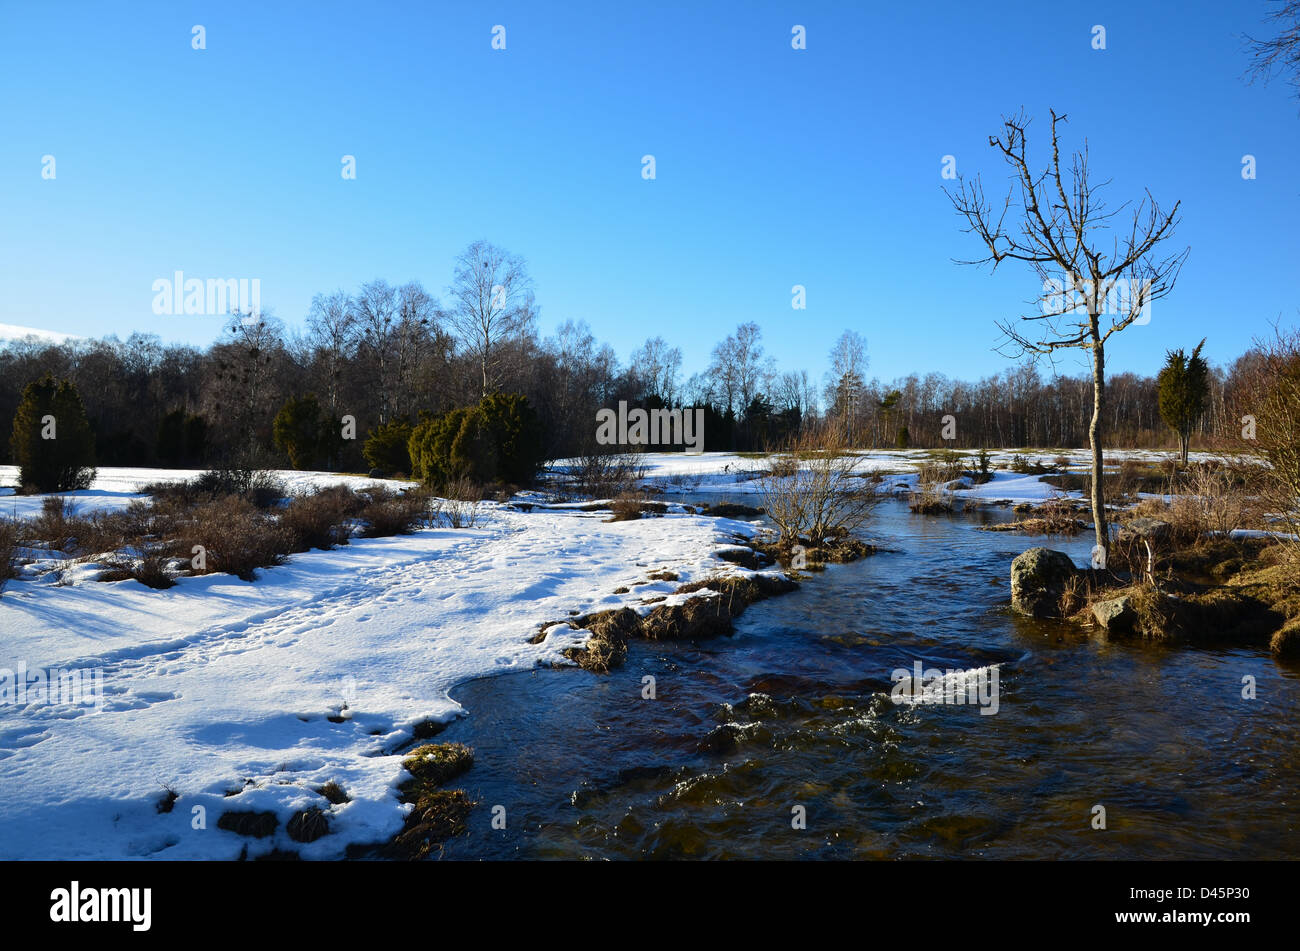 Lo streaming di acqua in un piccolo fiume a inizio primavera. Dall'isola svedese Öland. Foto Stock